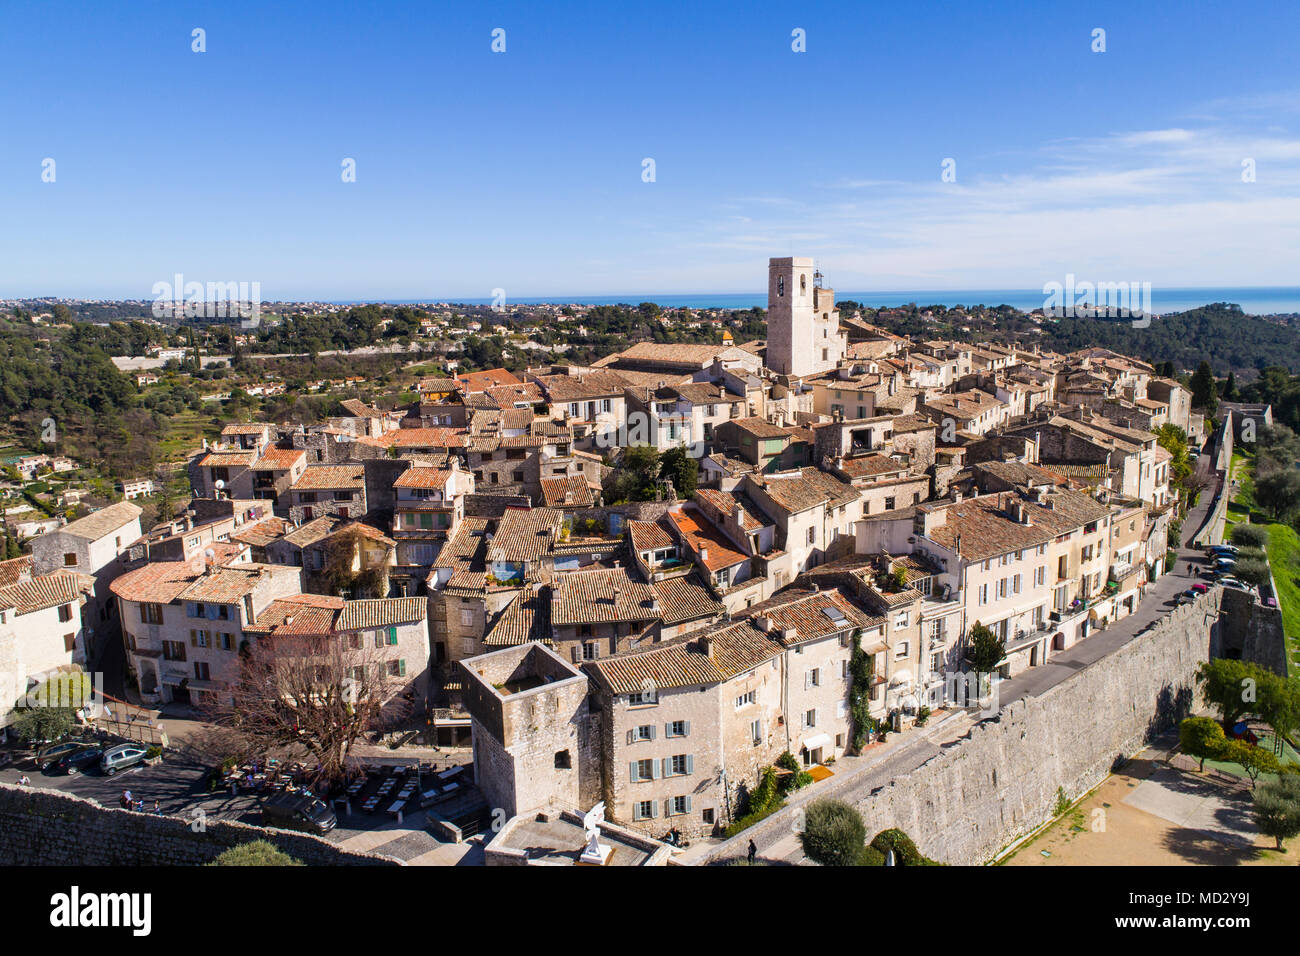 Vista aerea di St Paul de Vence, un famoso borgo arroccato sulla Riviera Francese. Foto Stock